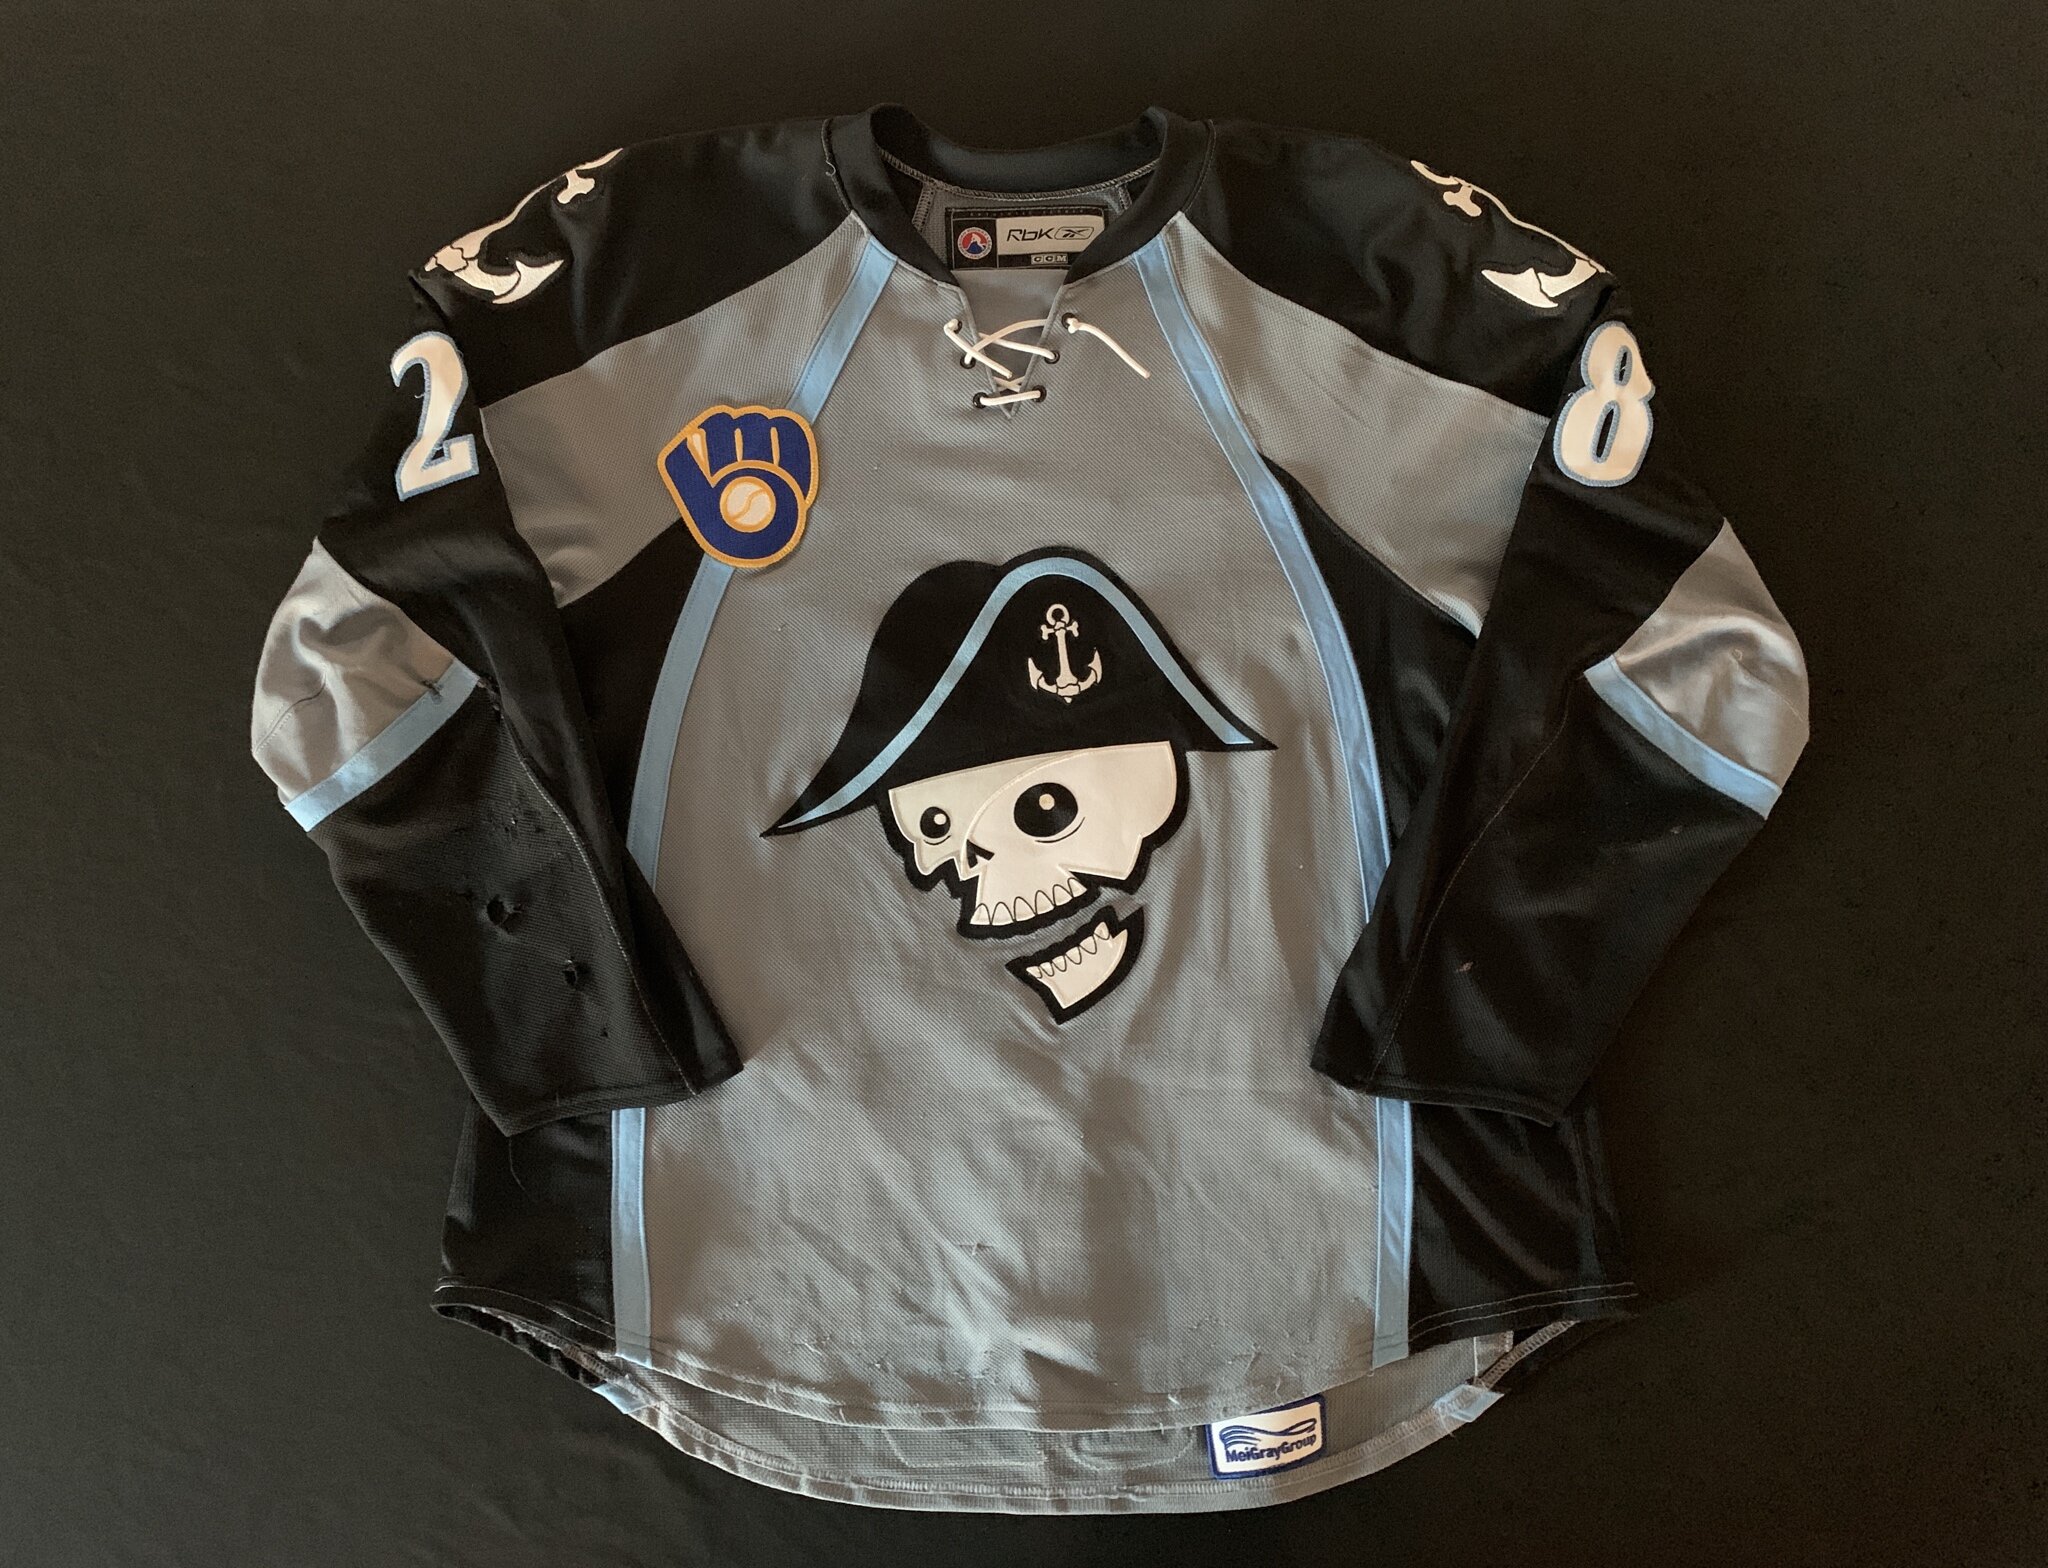 milwaukee admirals alternate jersey